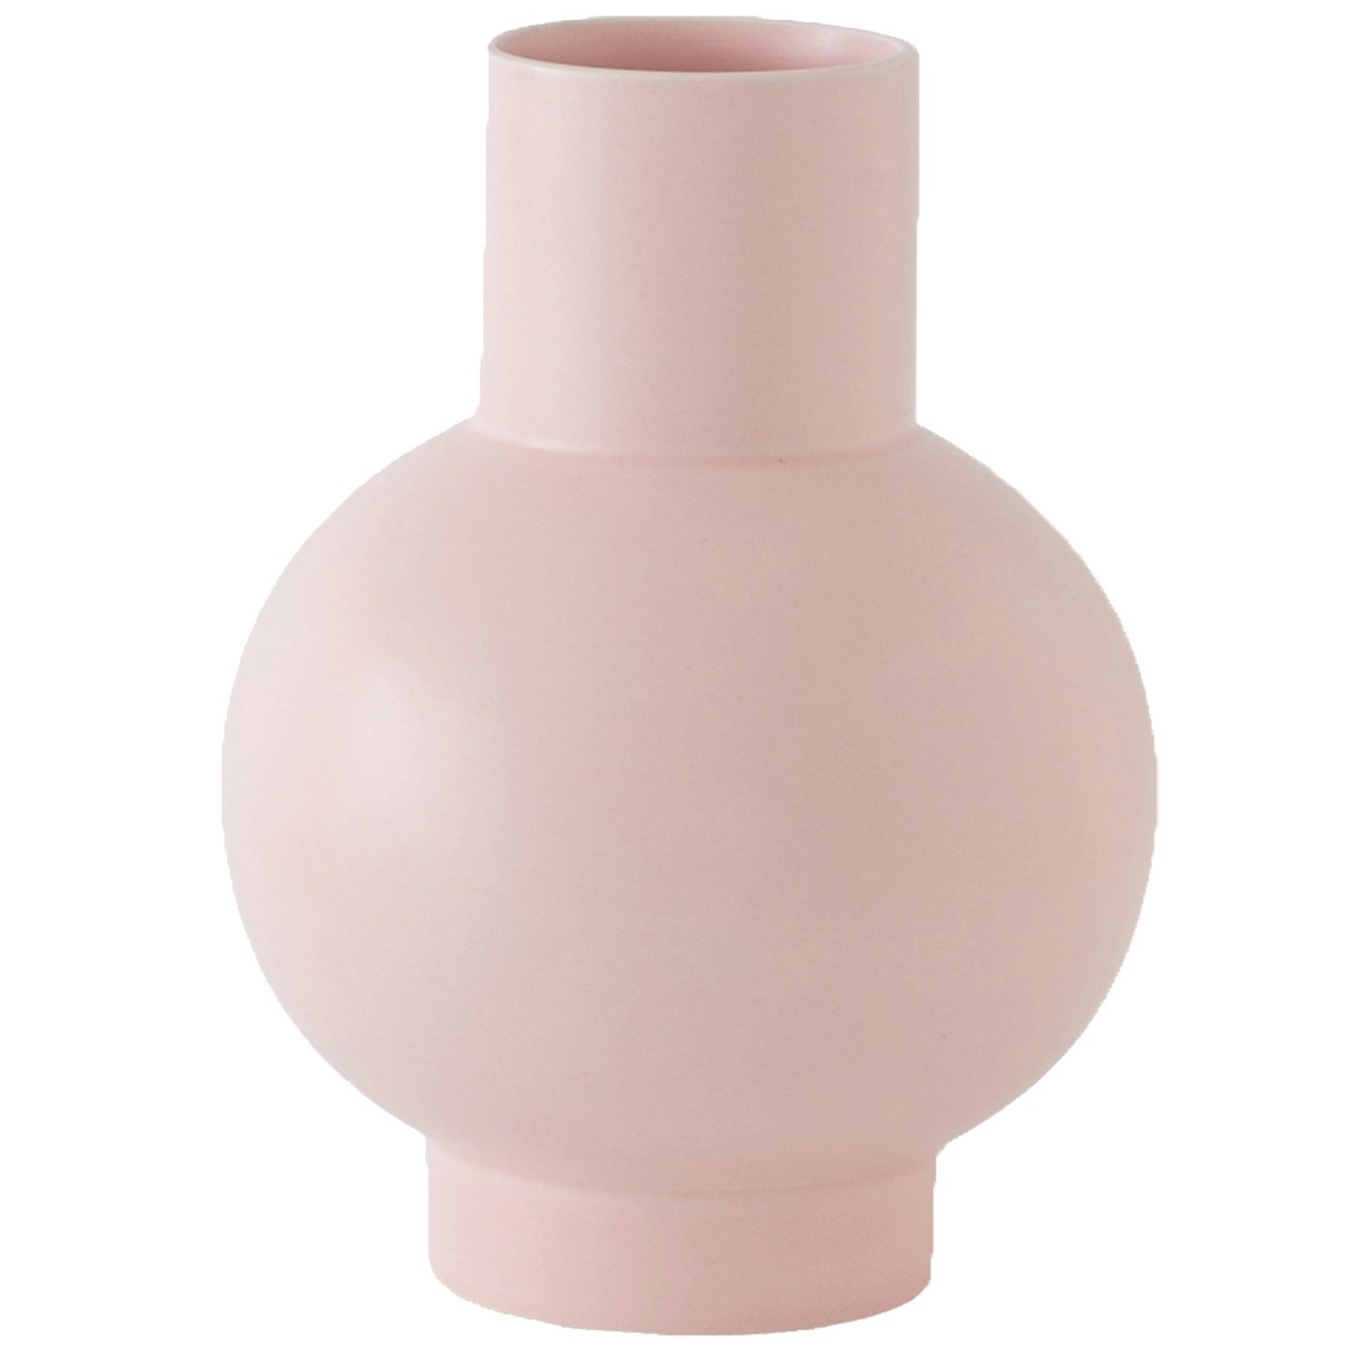 Strøm Vase 16 cm, Coral Blush